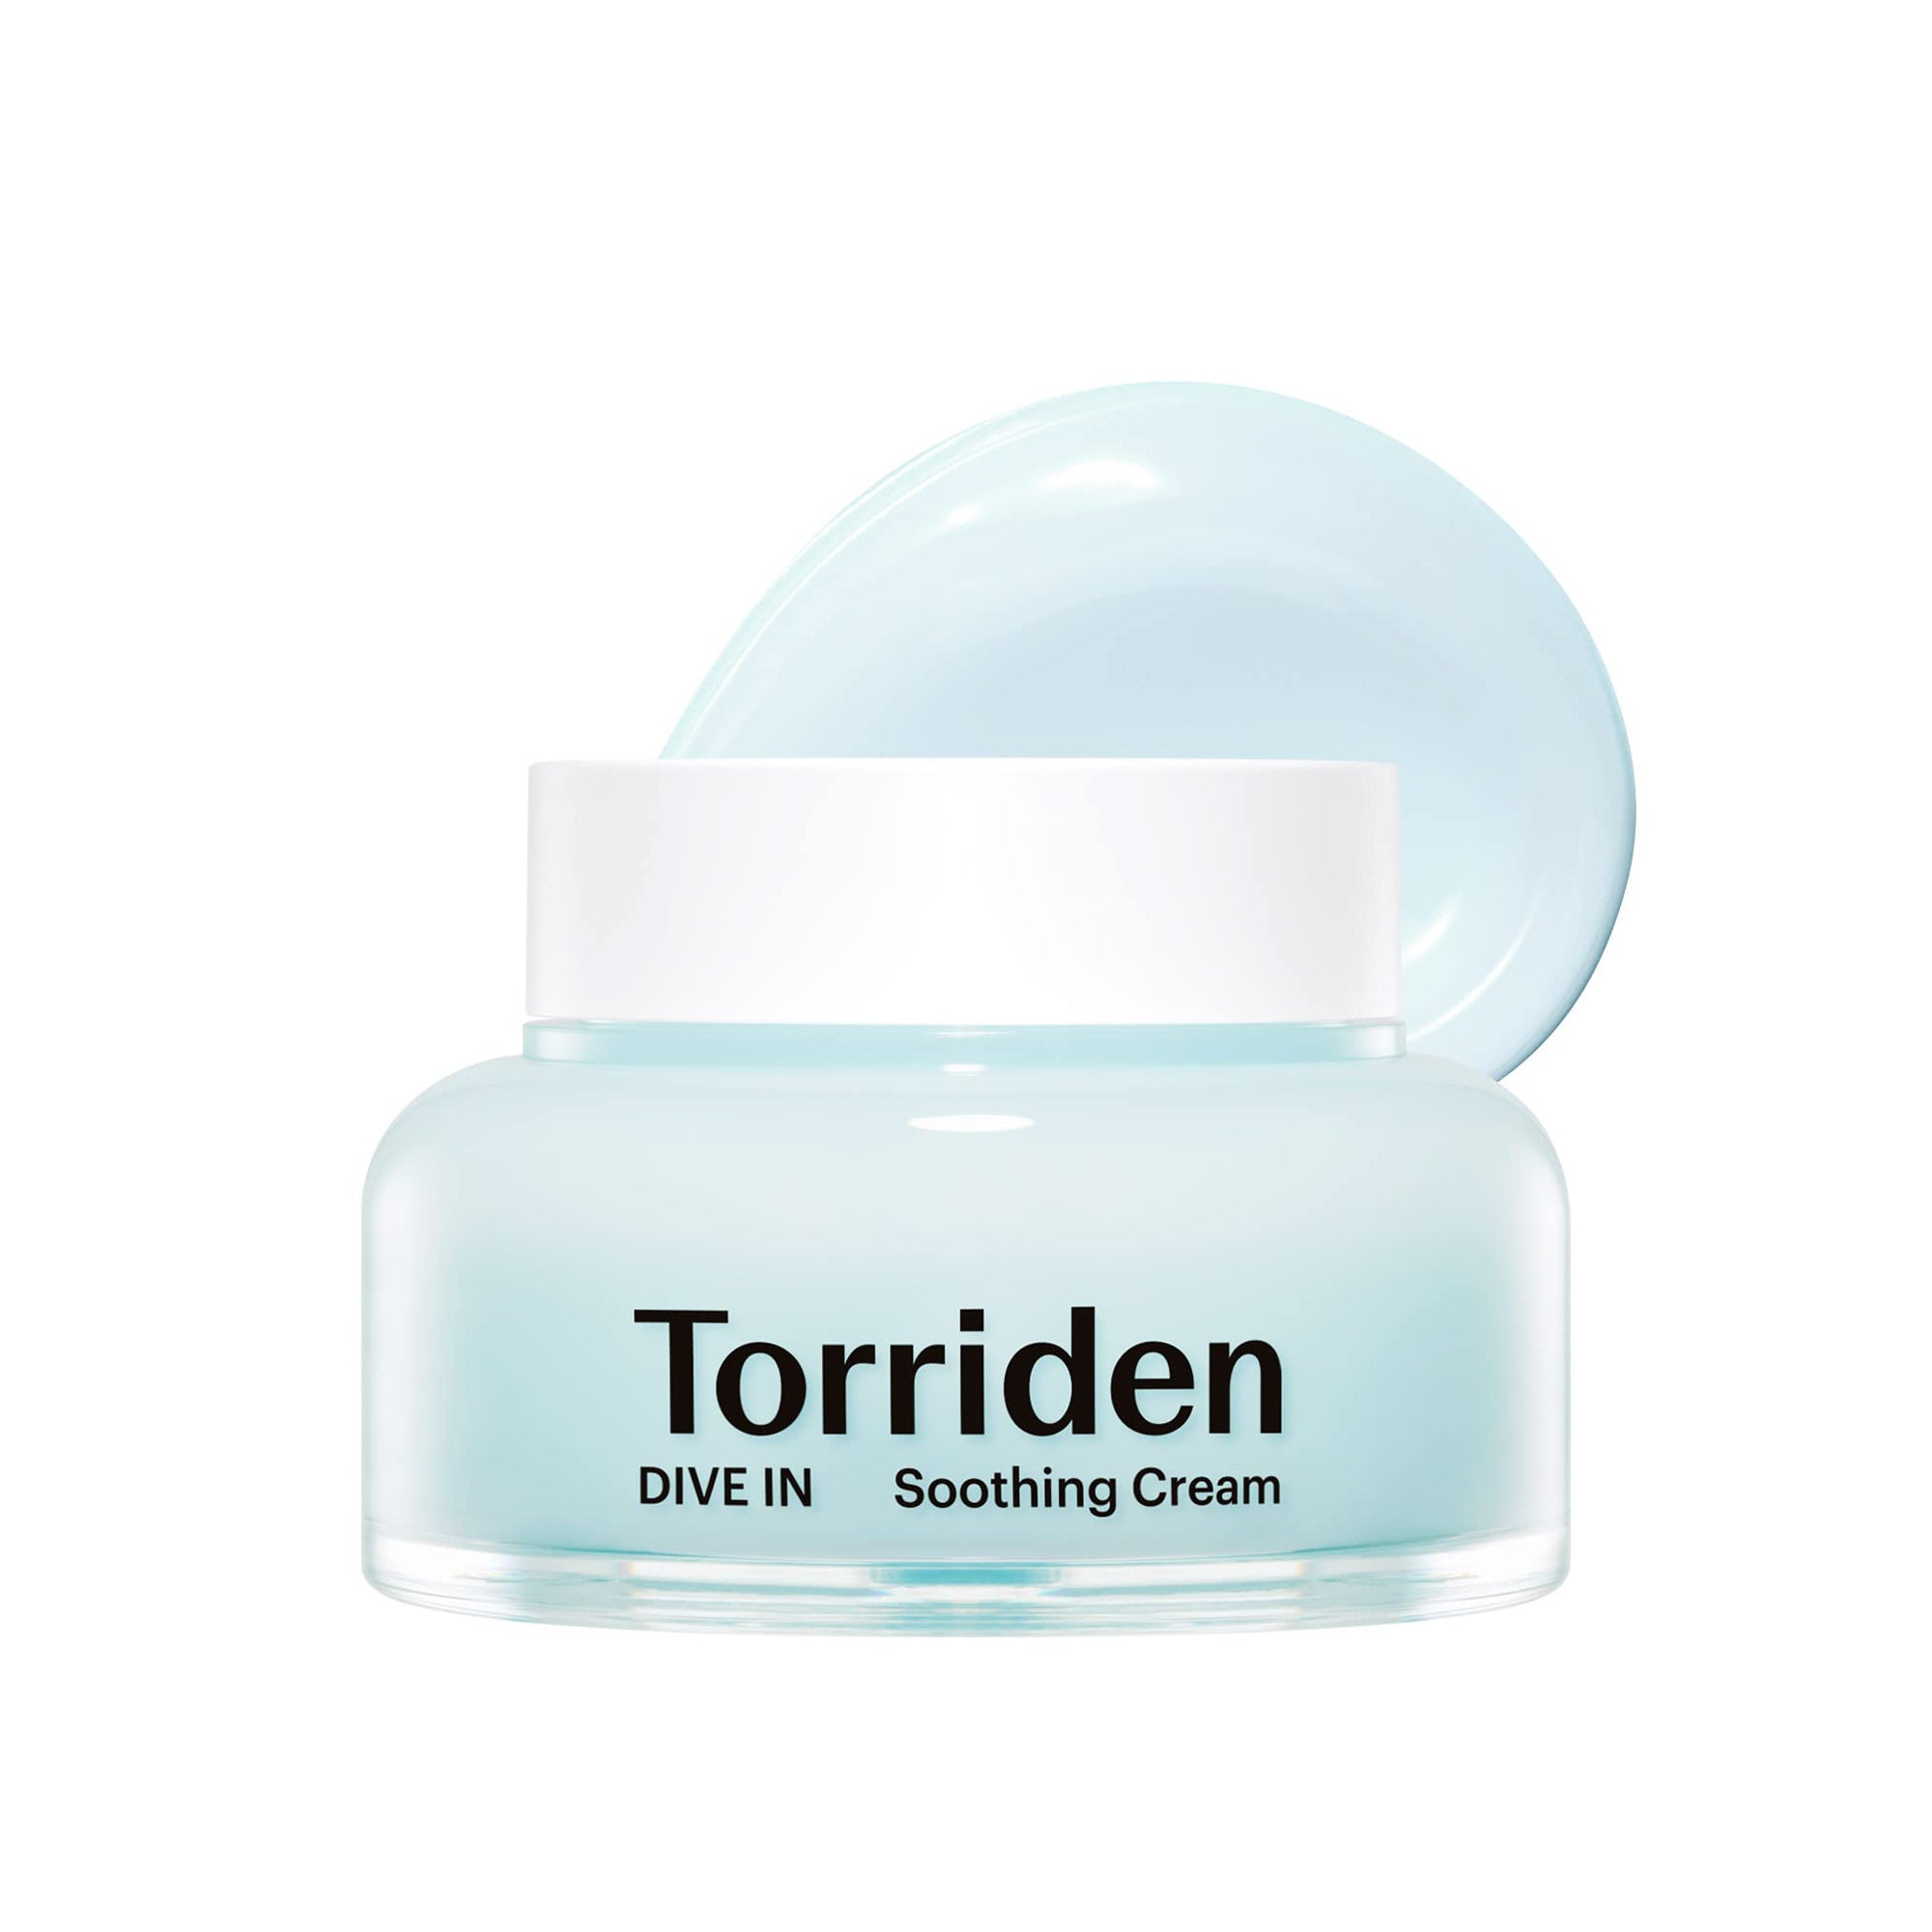 Torriden Dive-in Soothing Cream Skin Care Torriden   